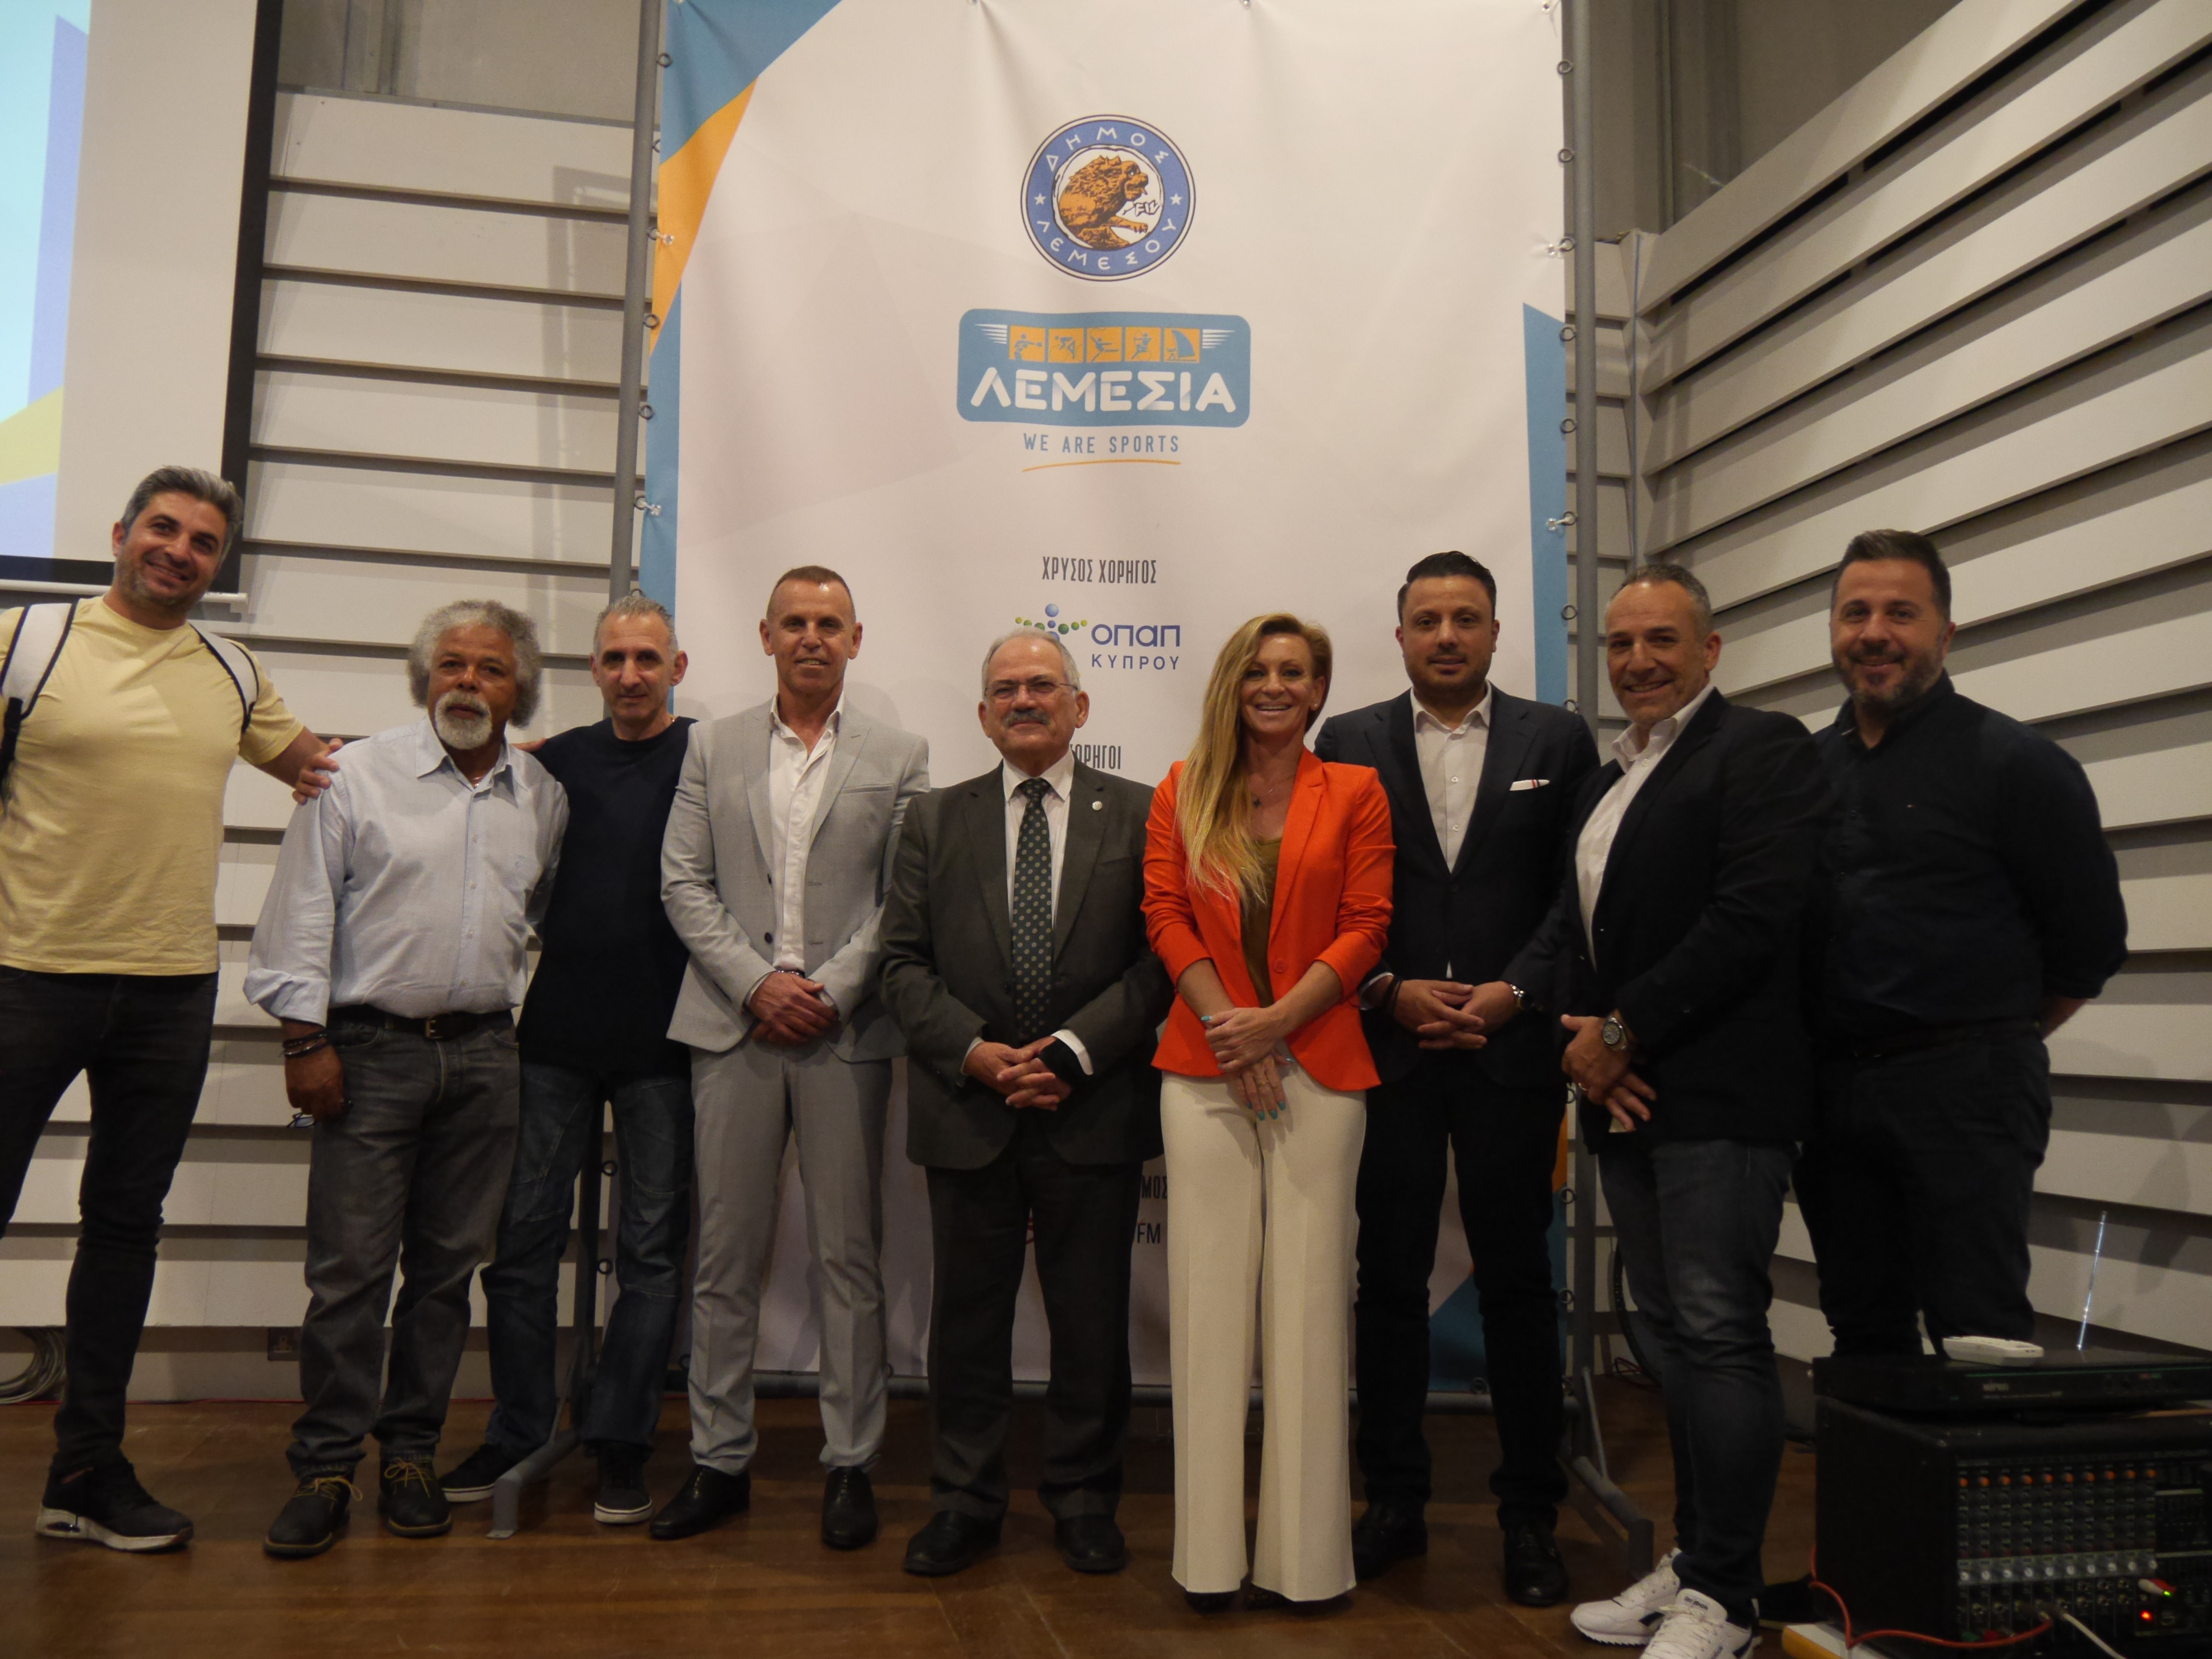 ΟΠΑΠ Λεμέσια 2023: Εντυπωσιακά αγωνίσματα και υπερθέαμα στη μεγαλύτερη αθλητική διοργάνωση της Κύπρου